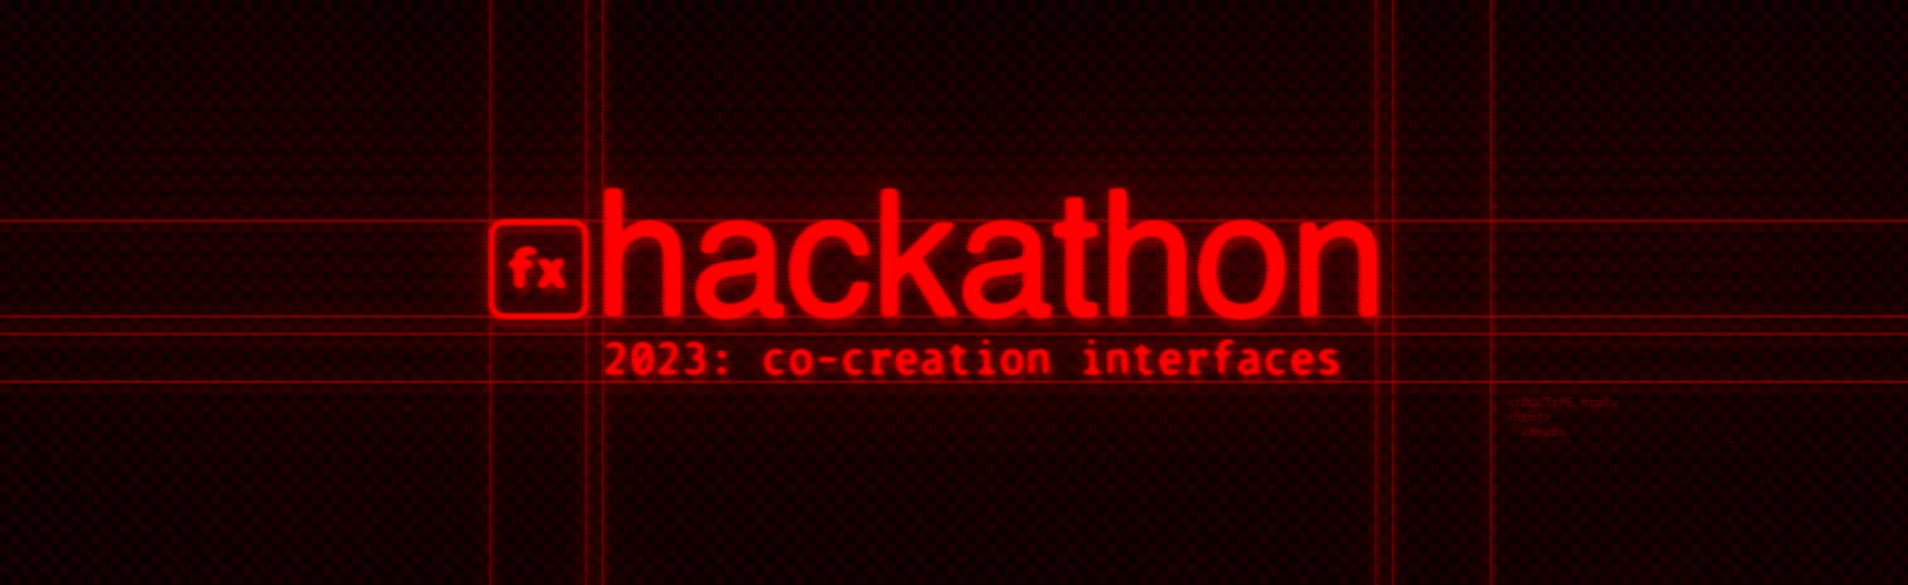 hackathon2023